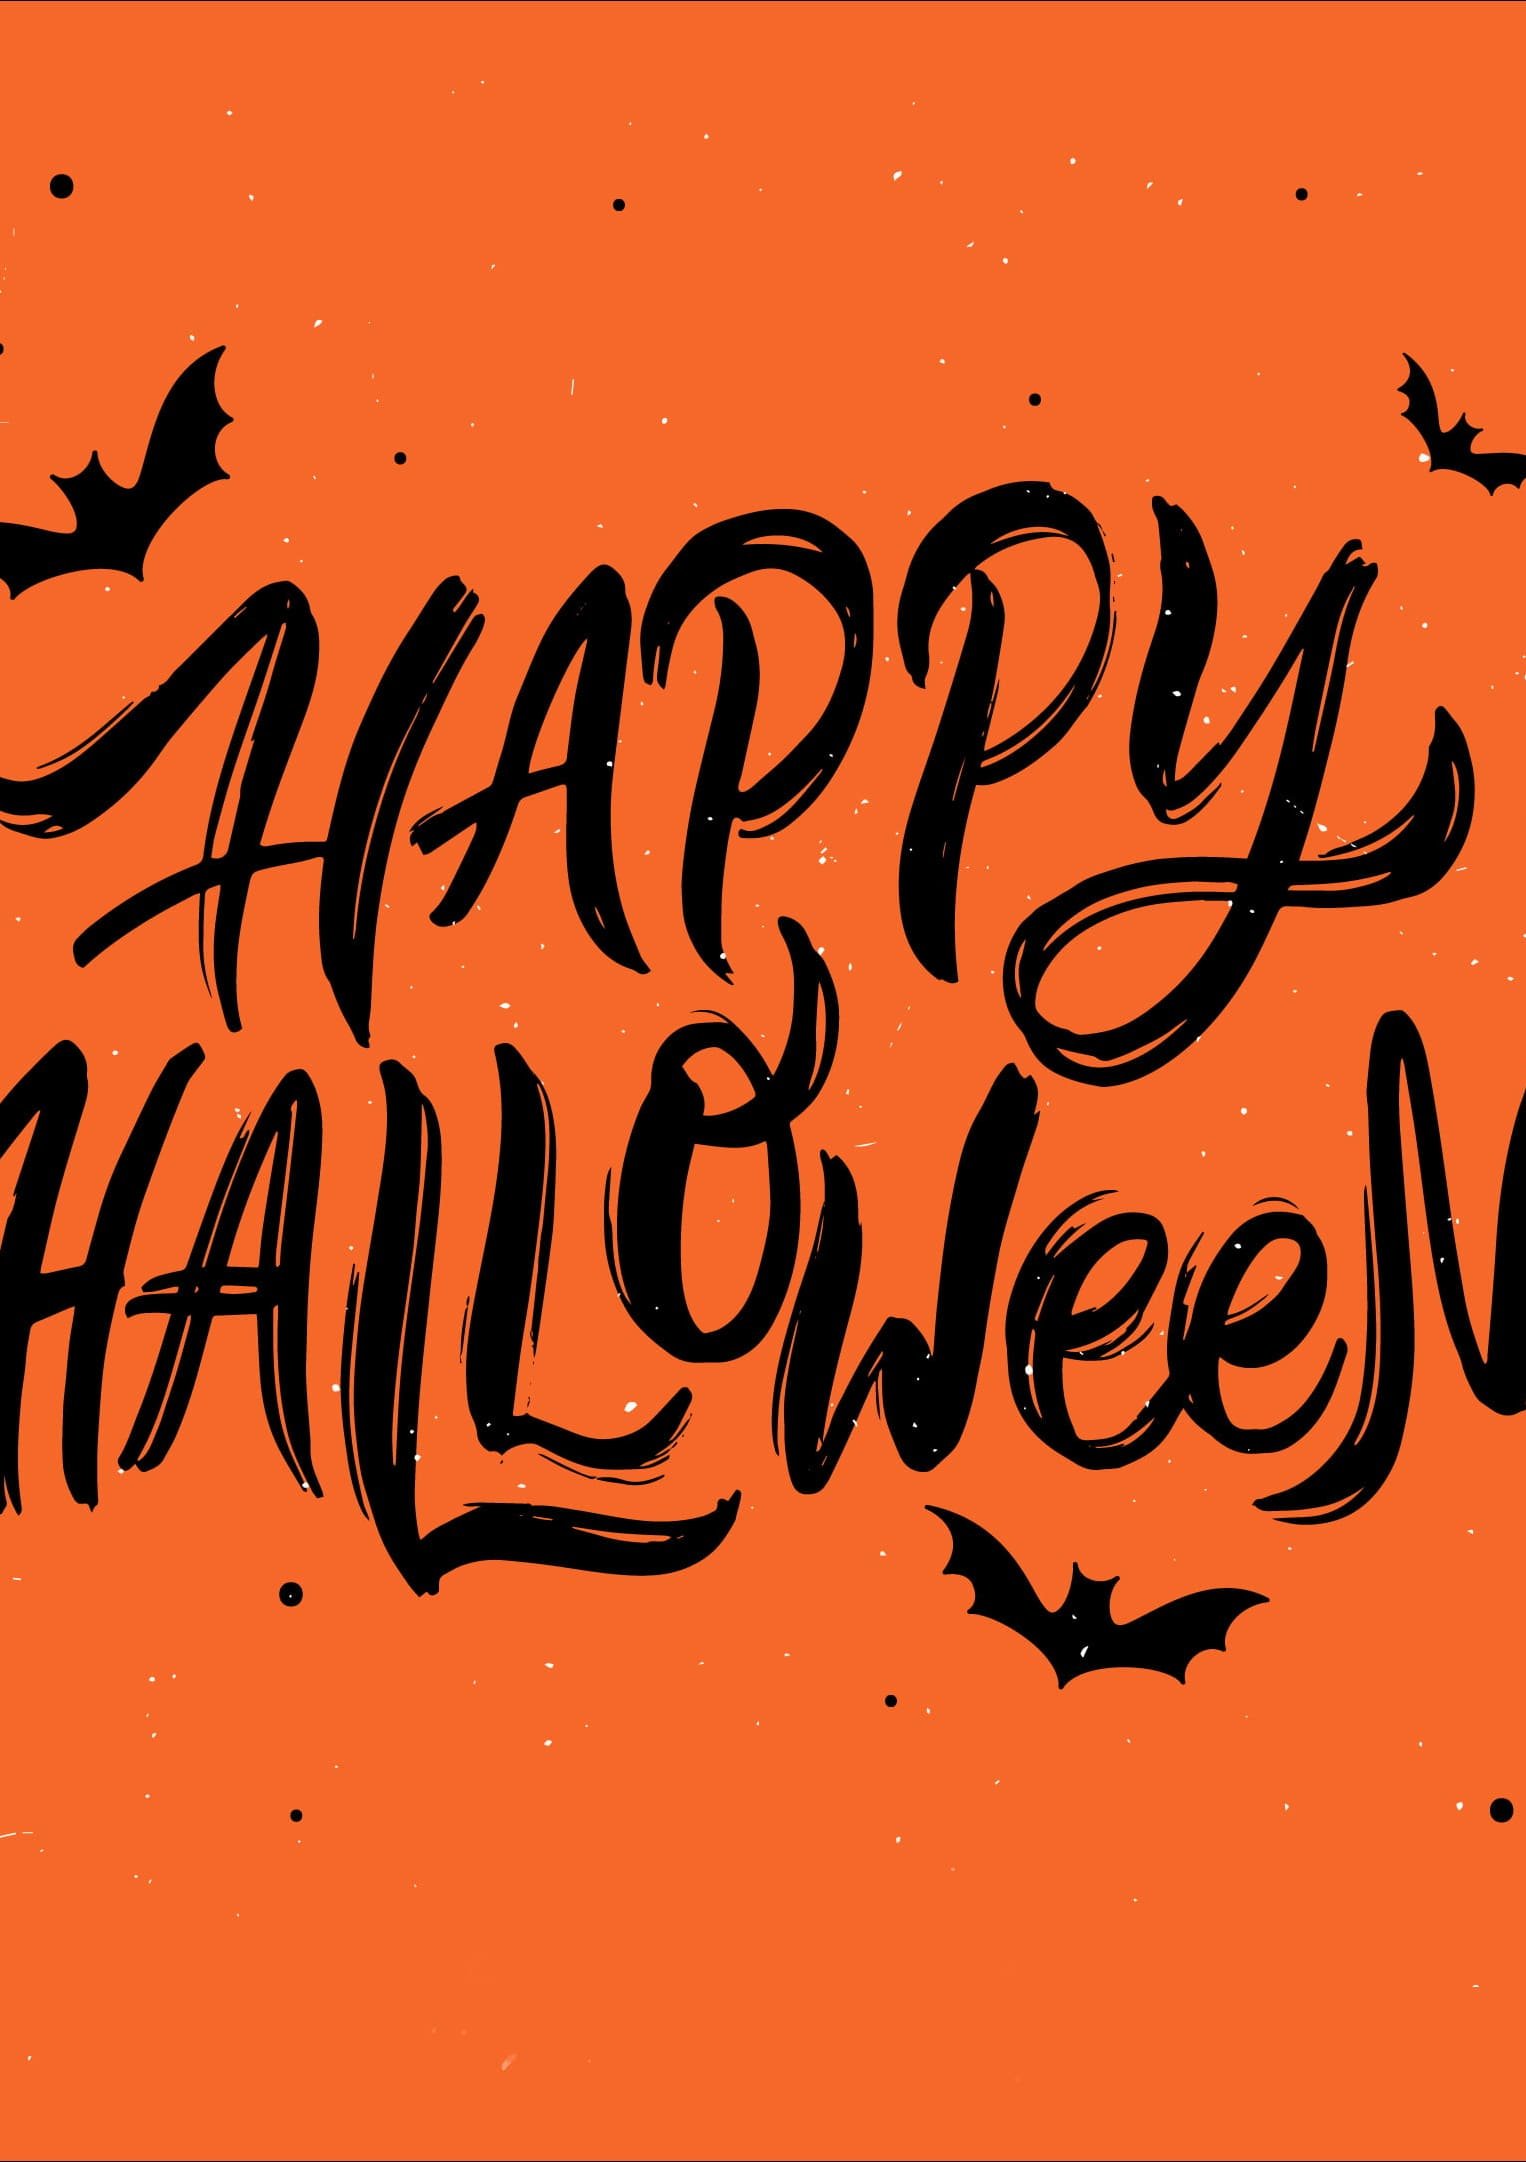 HD wallpaper Halloween typography orange background quote vector bats